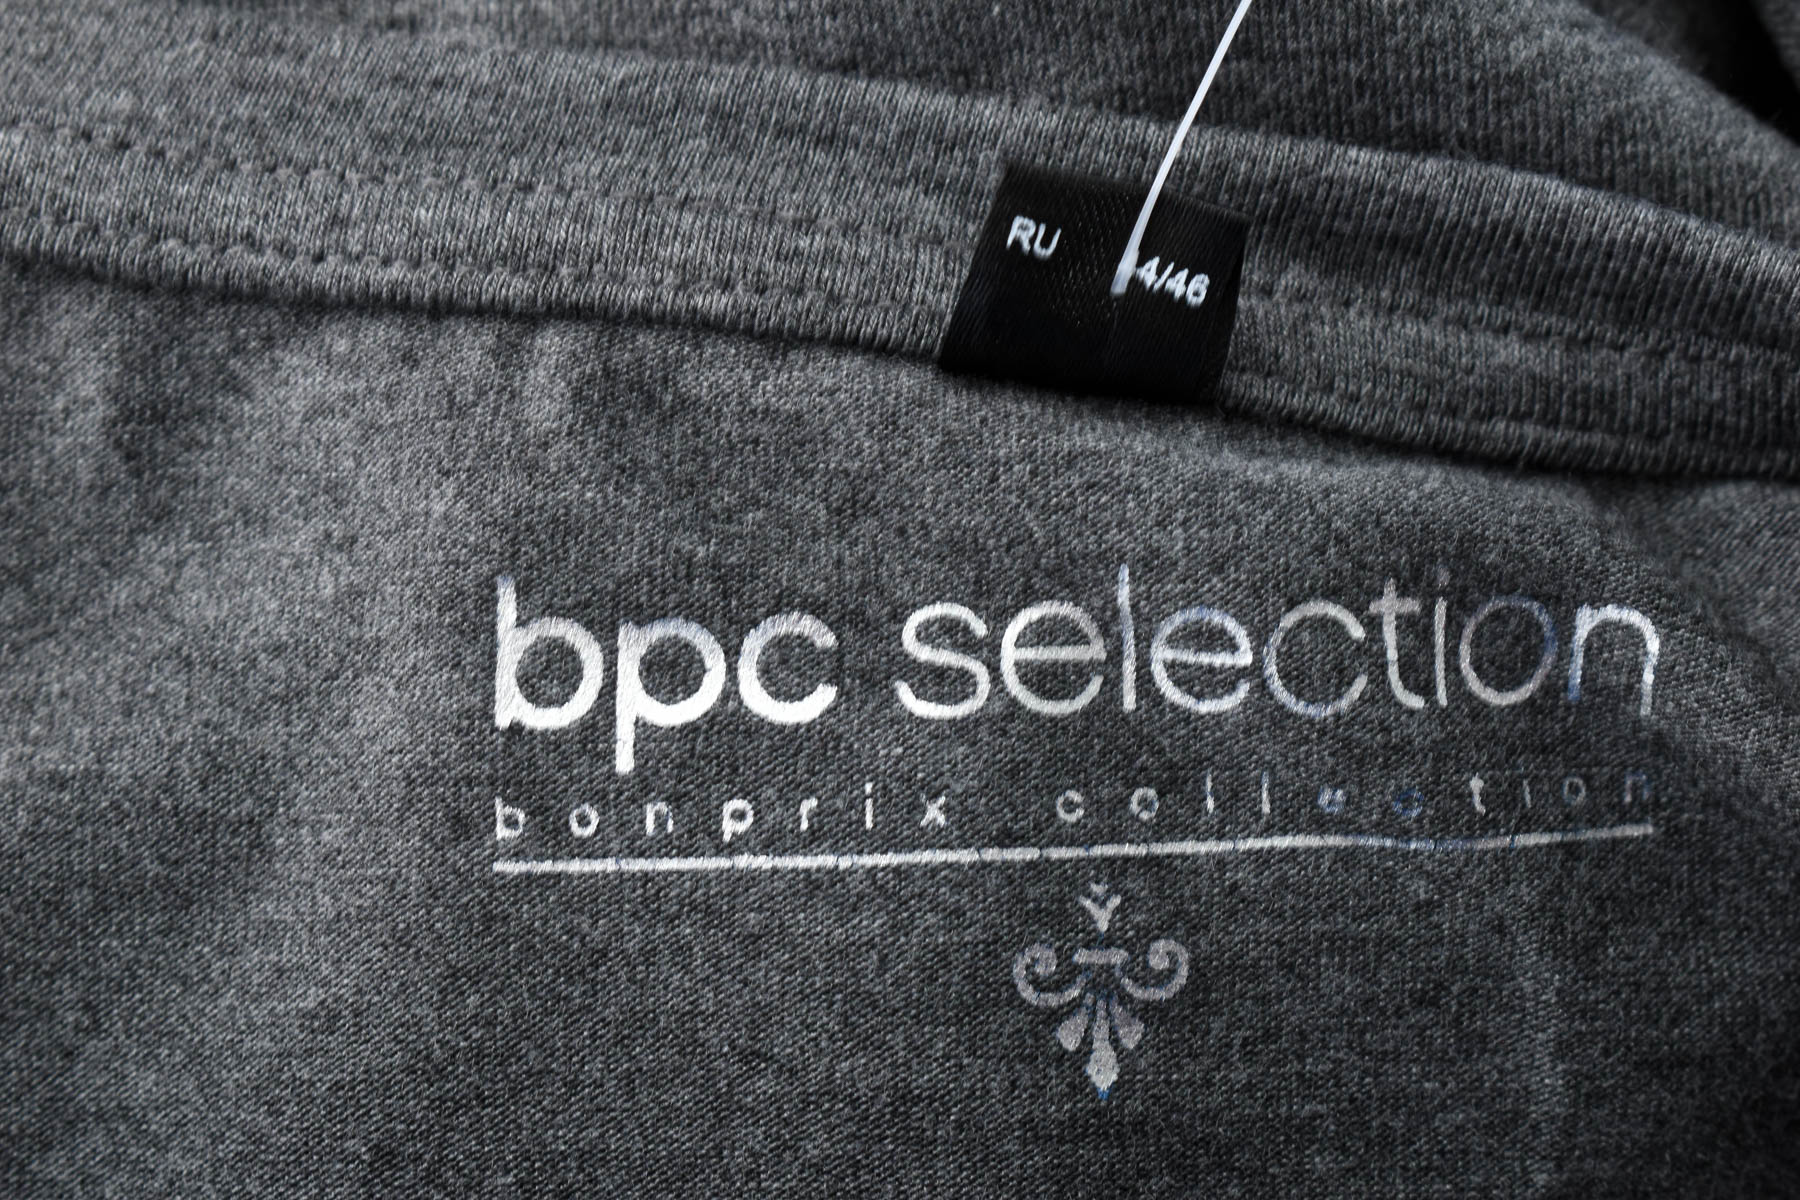 Bluzka damska - Bpc selection bonprix collection - 2